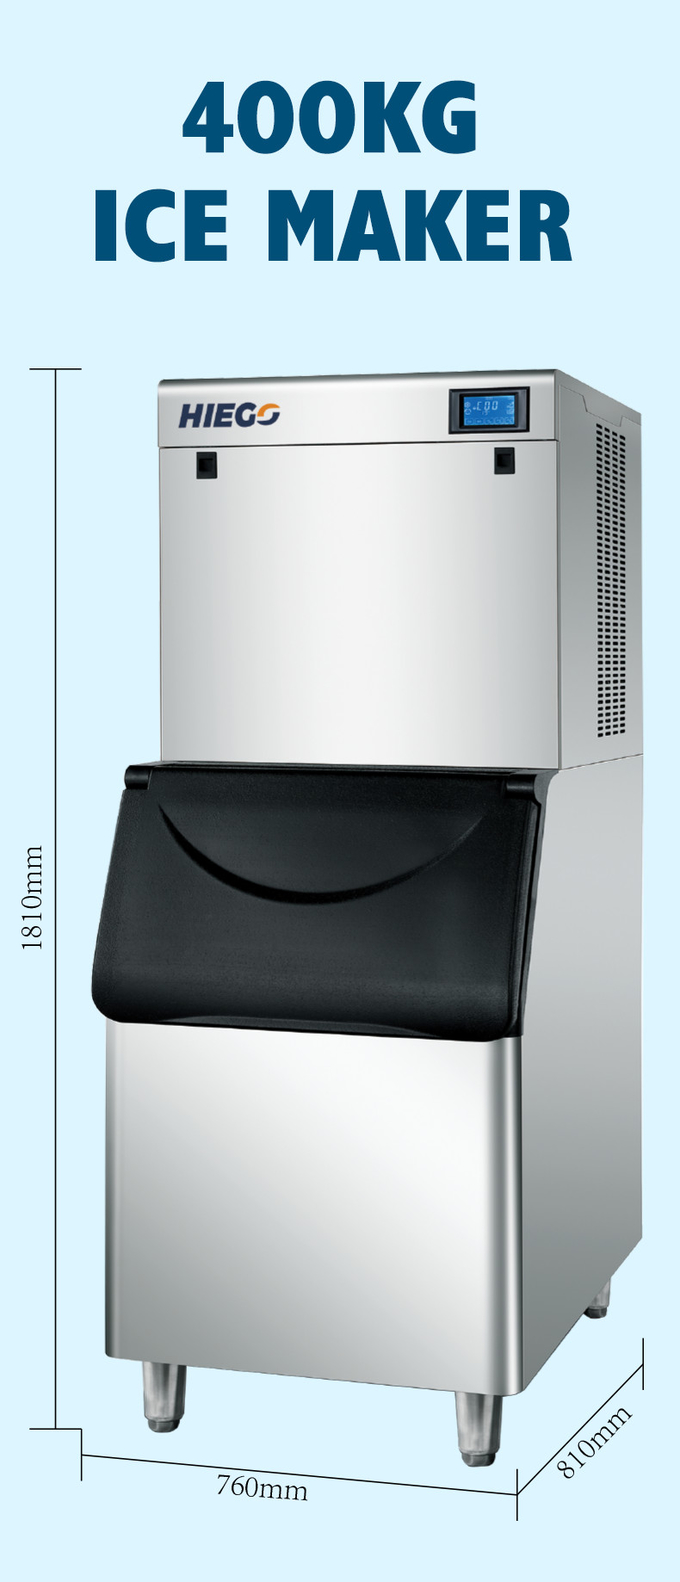 Dondurucu 400kg Paslanmaz Çelik Otomatik Buz Topu Makinesi İçin Ticari Buz Küpü Makinesi 7